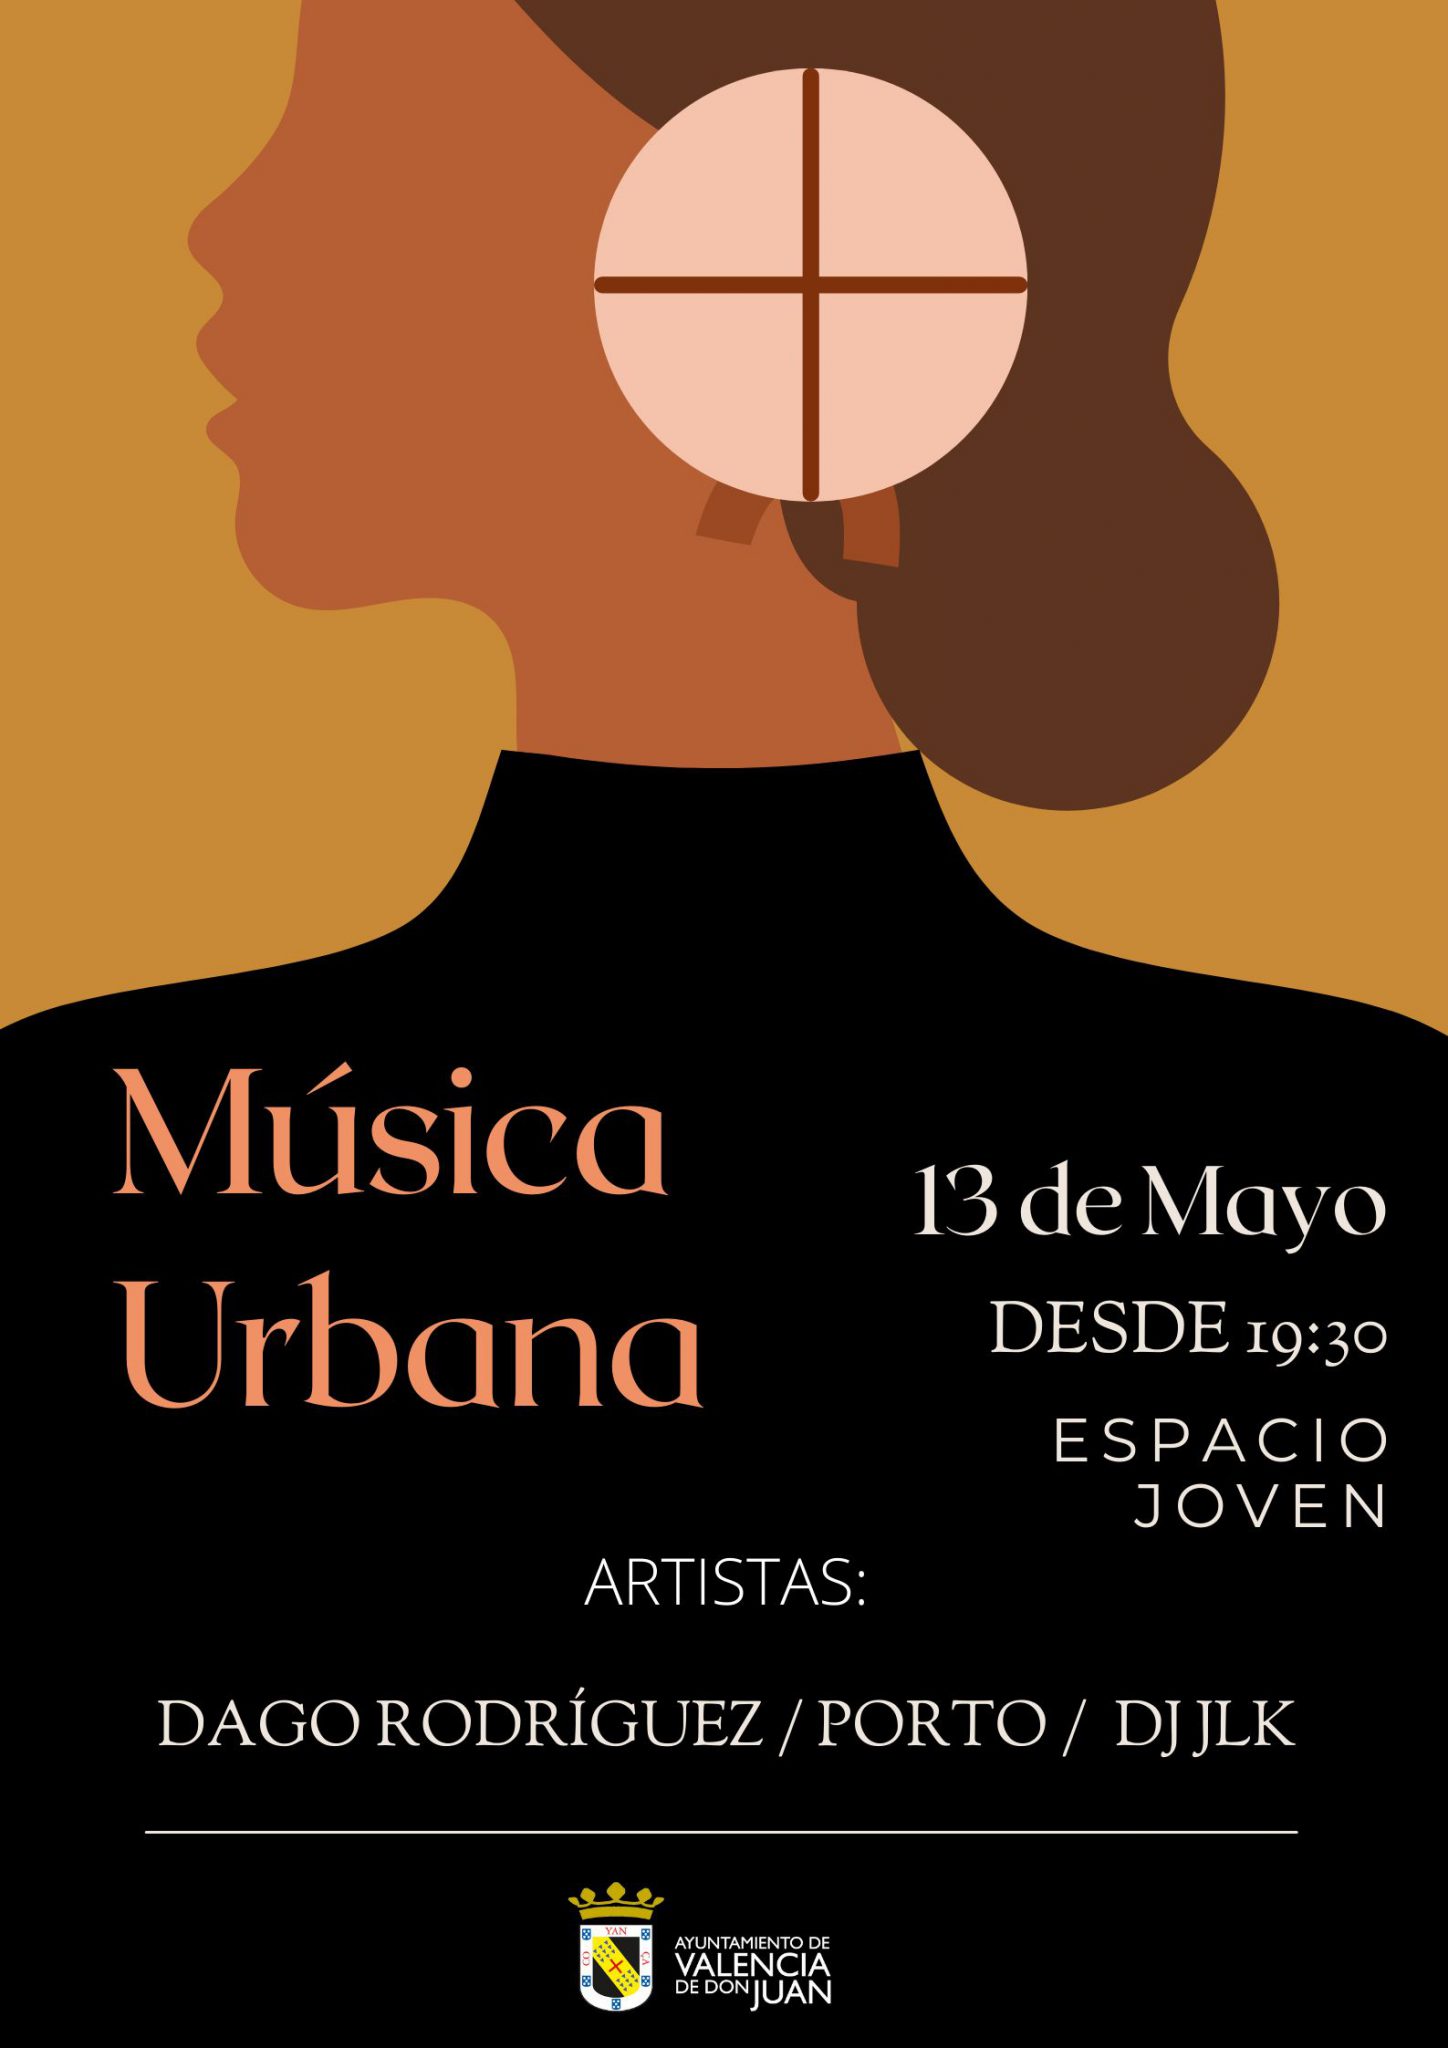 Música Urbana: con el rapero Dago Rodríguez, Porto y el Dj JLK